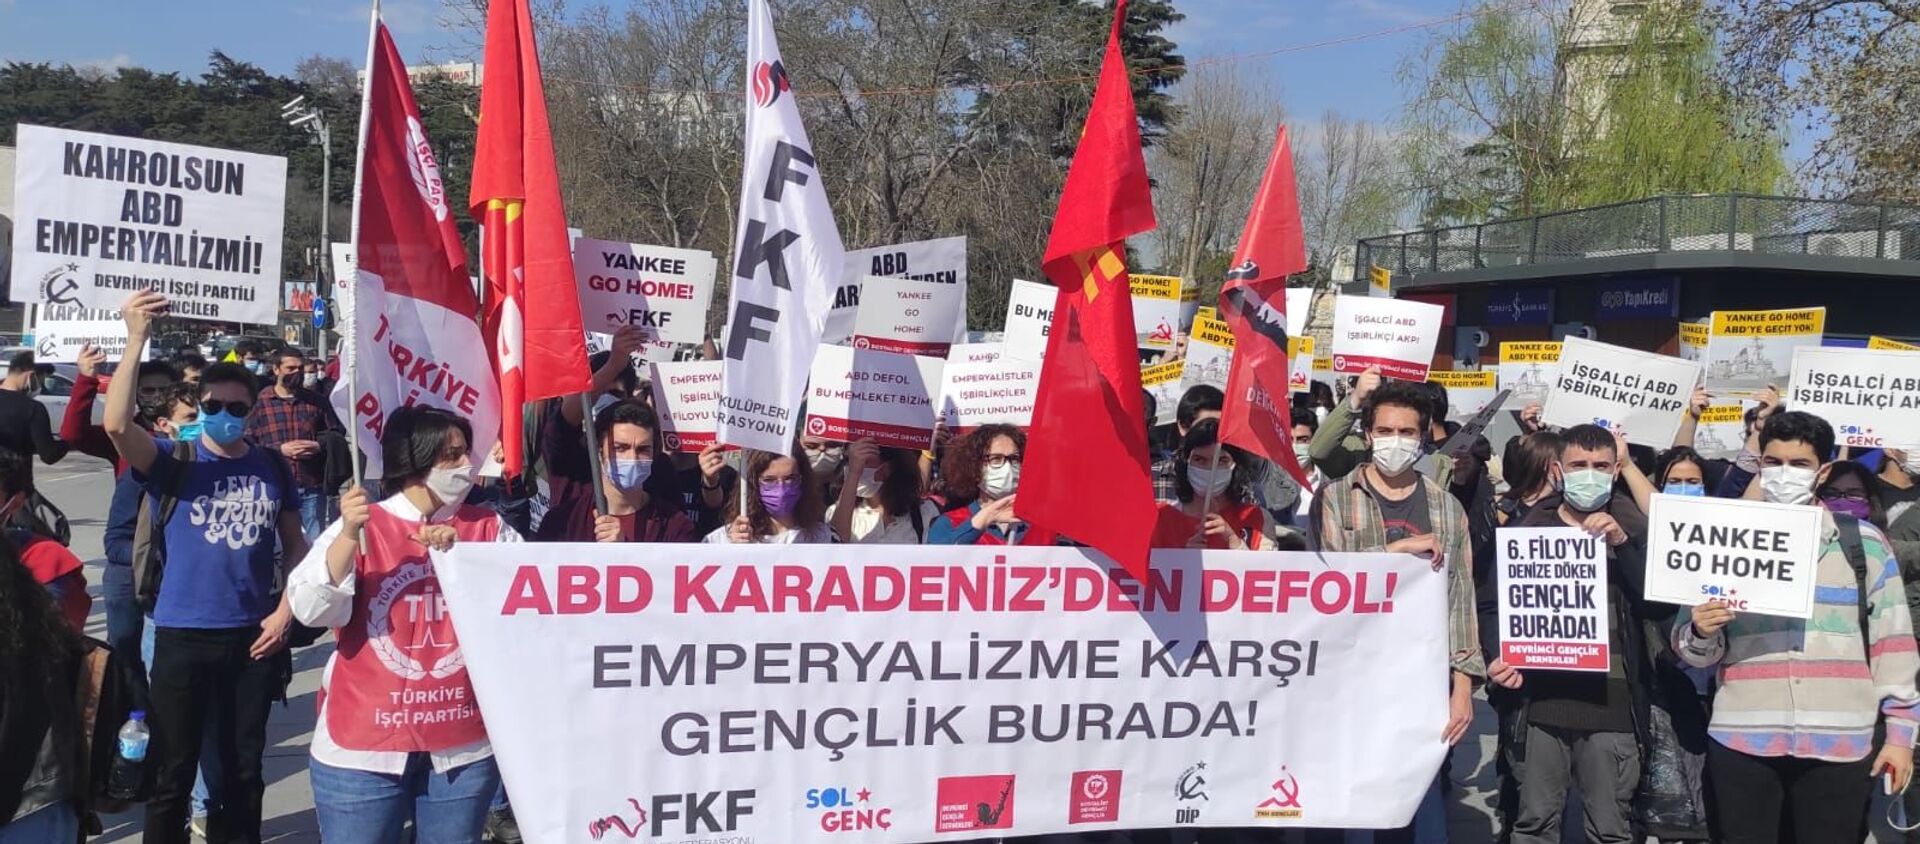 Турецкие молодежные организации выразили протест против отправки американских военных кораблей в Черном море - Sputnik Аҧсны, 1920, 15.04.2021